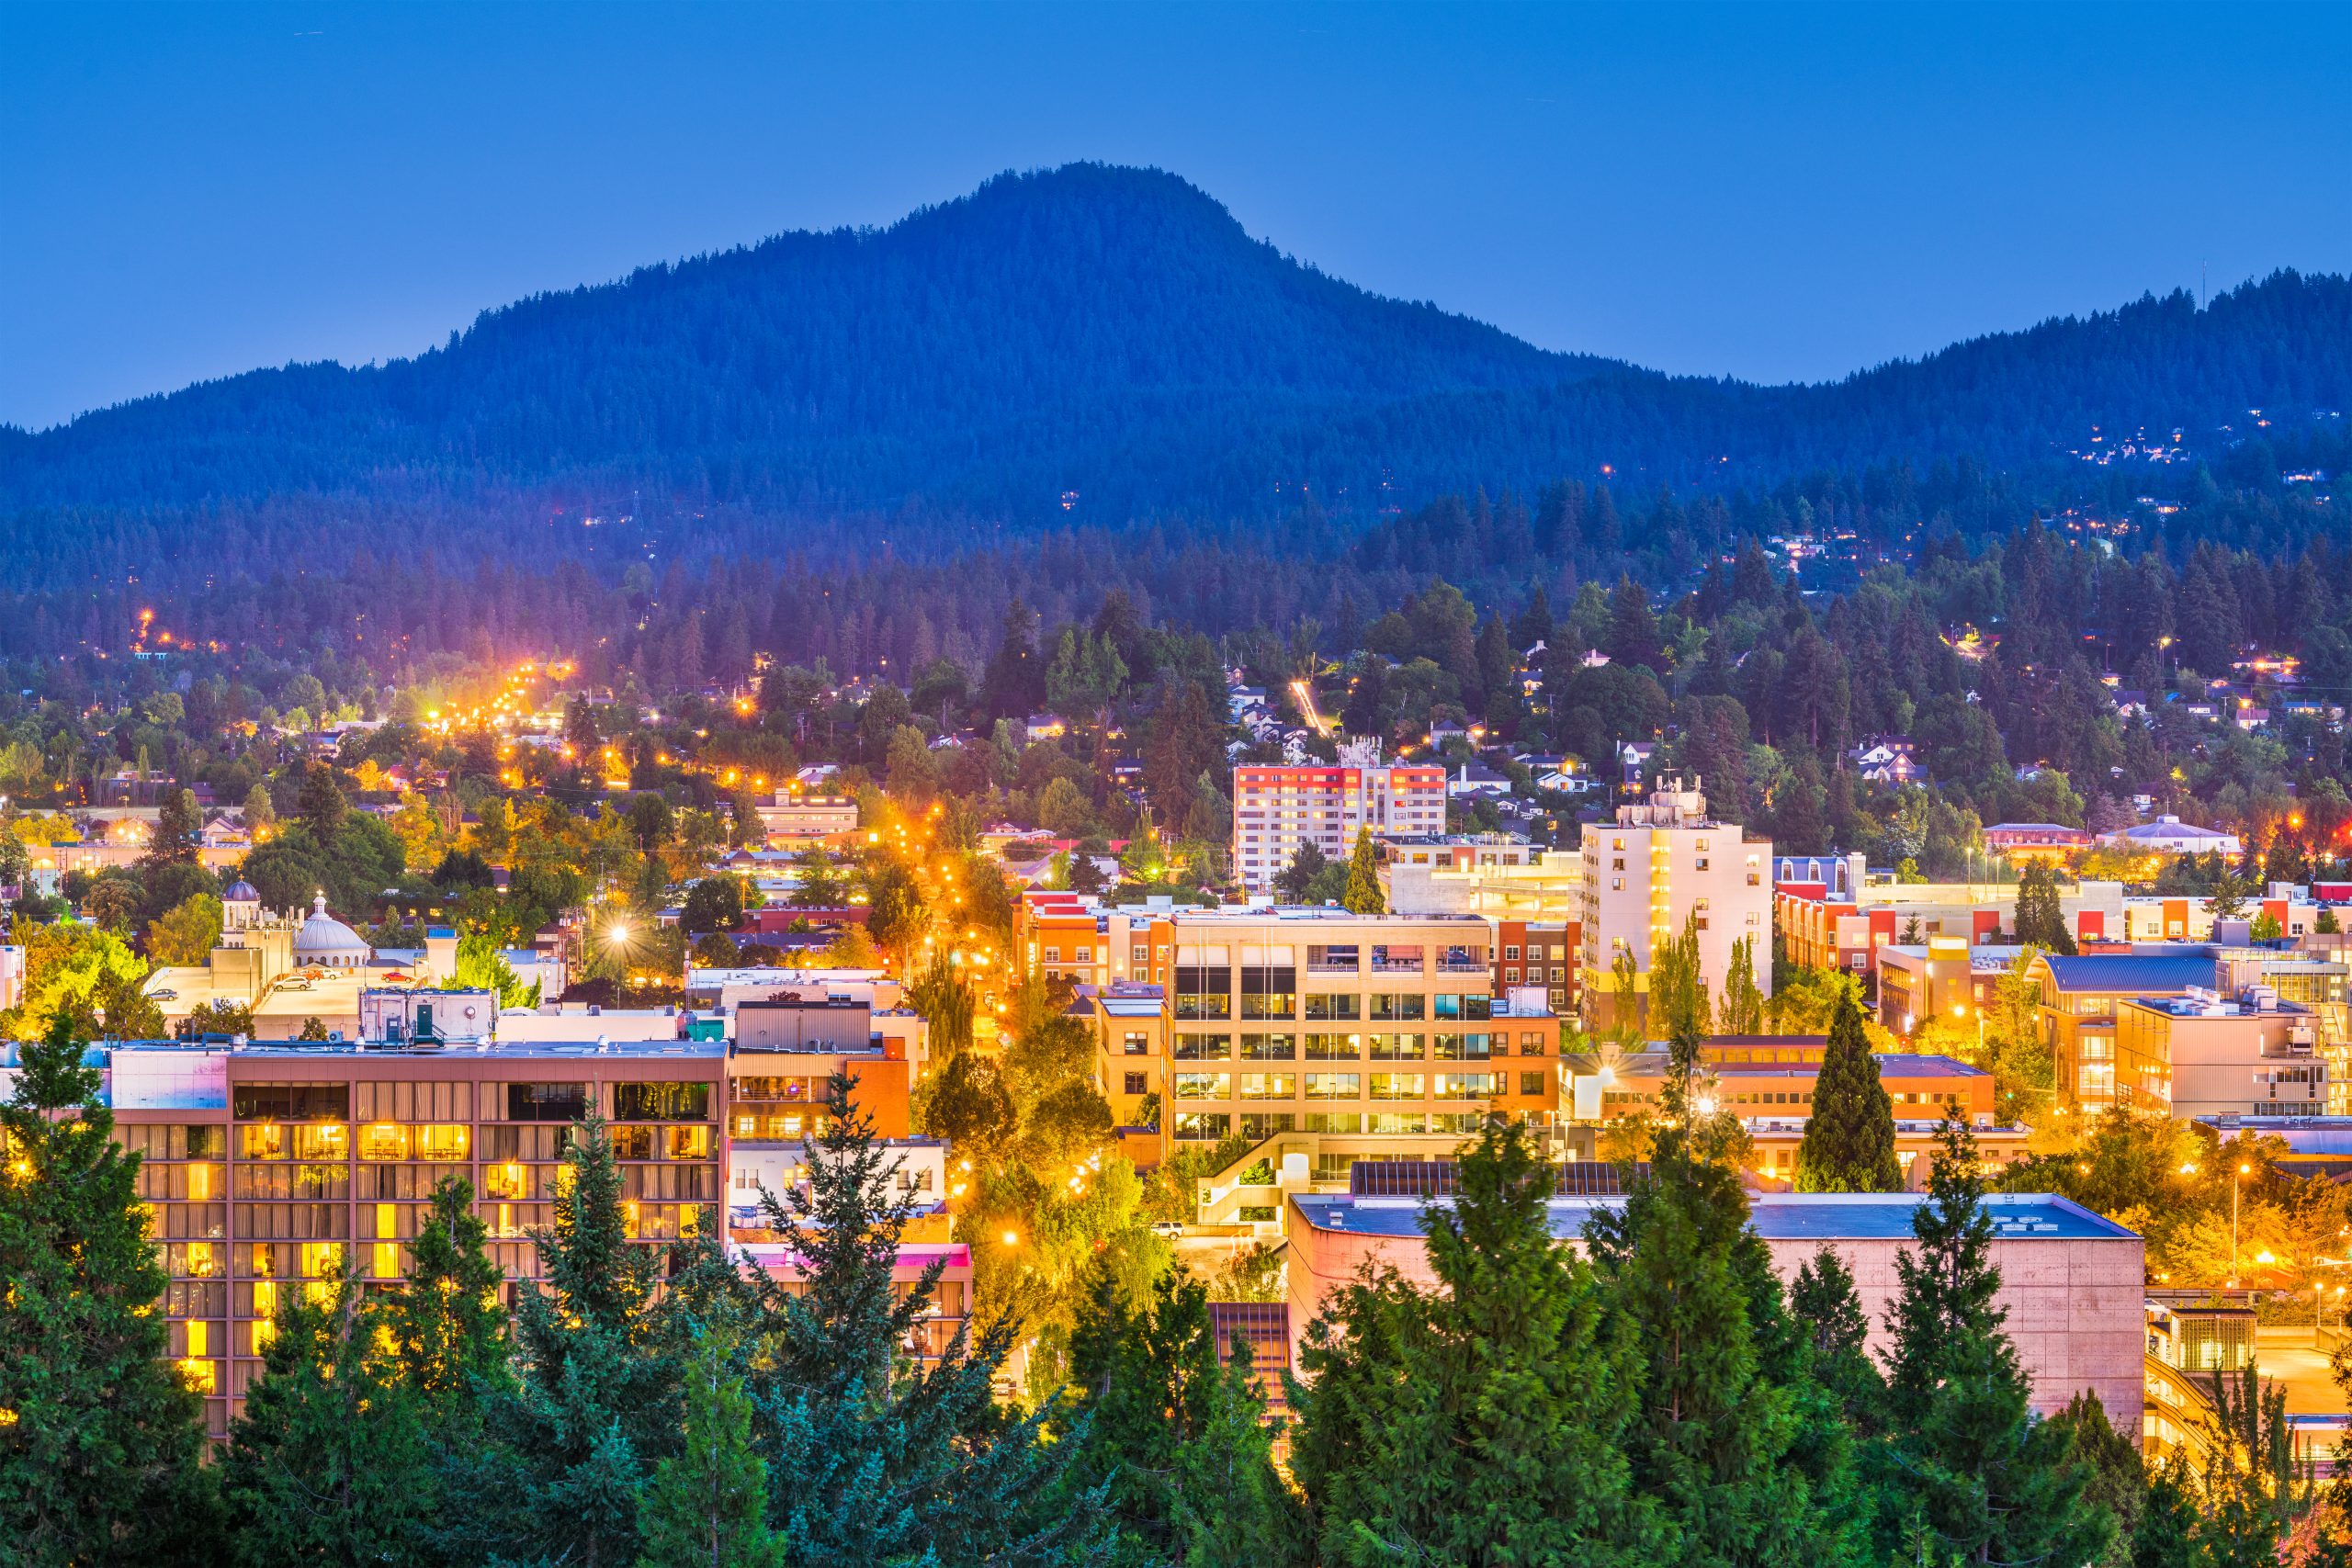 Moving to Eugene, Oregon